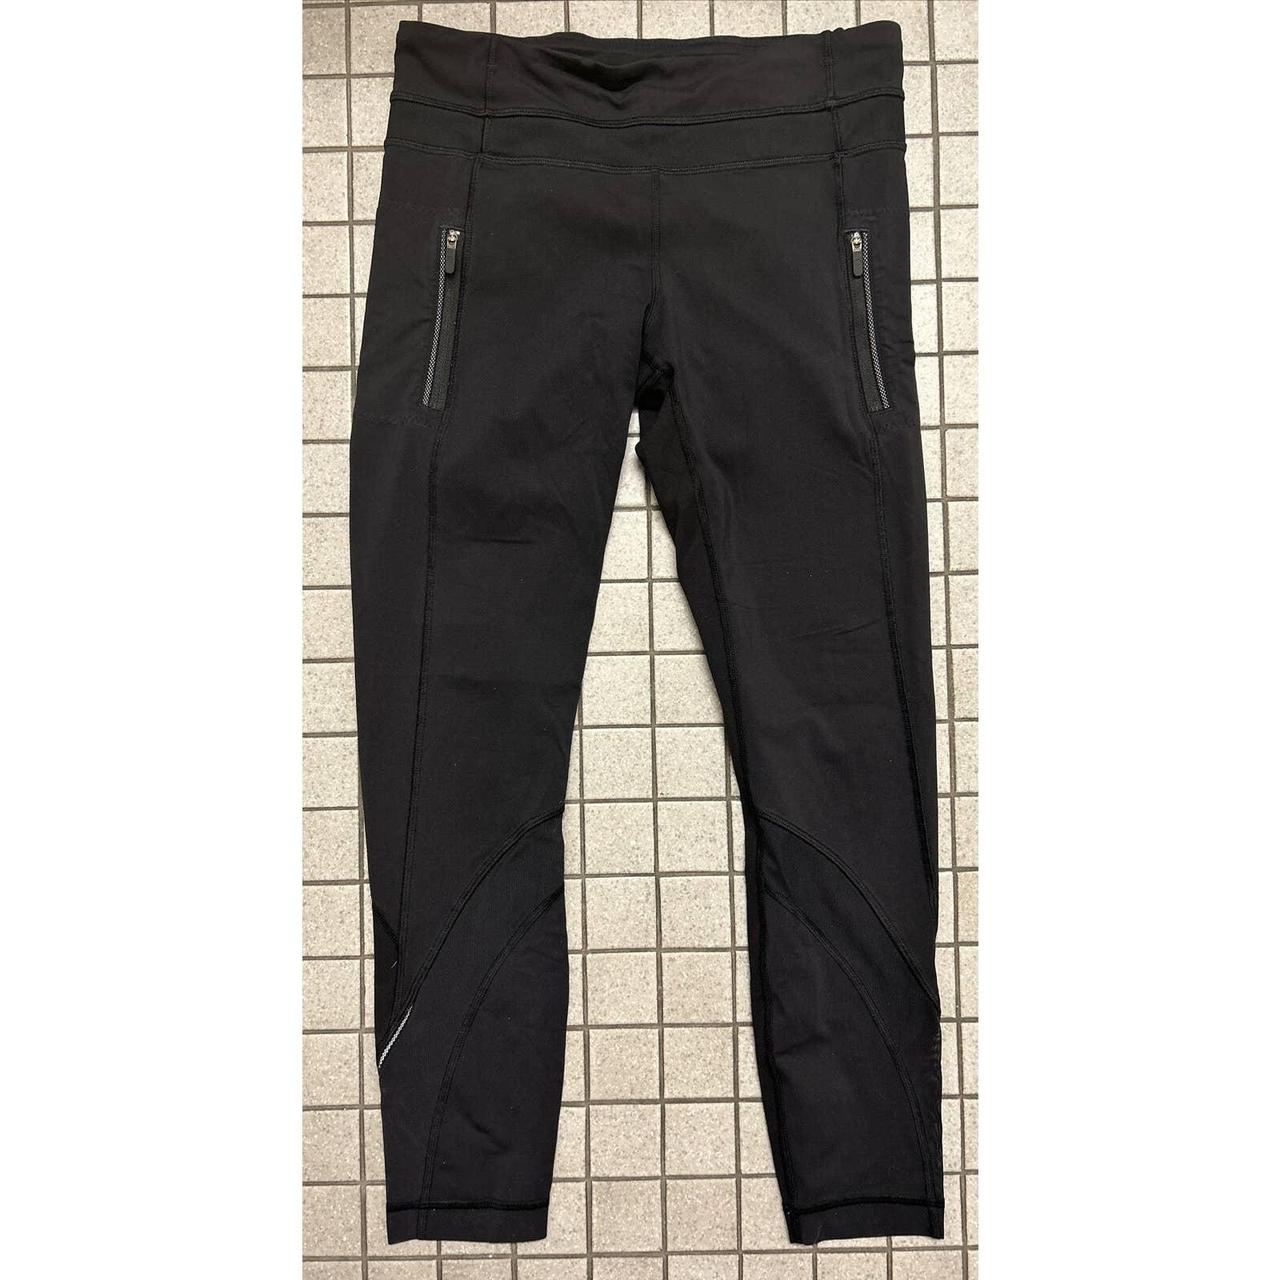 Lululemon Pocket Black leggings- Size 6